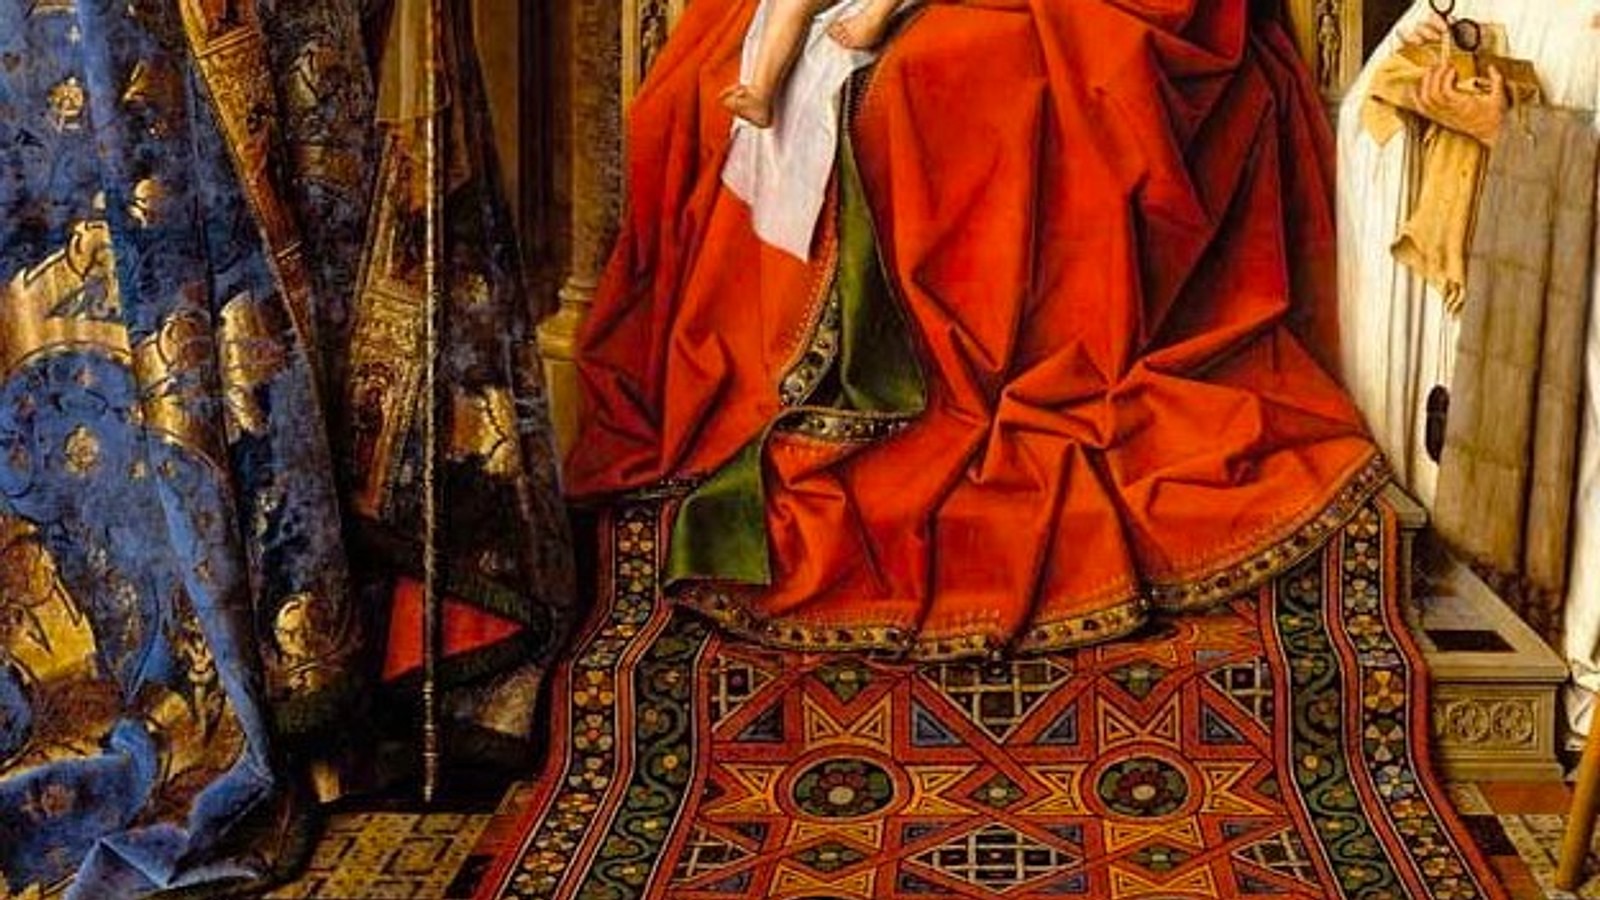 Colour & Technique in Renaissance Painting - World History